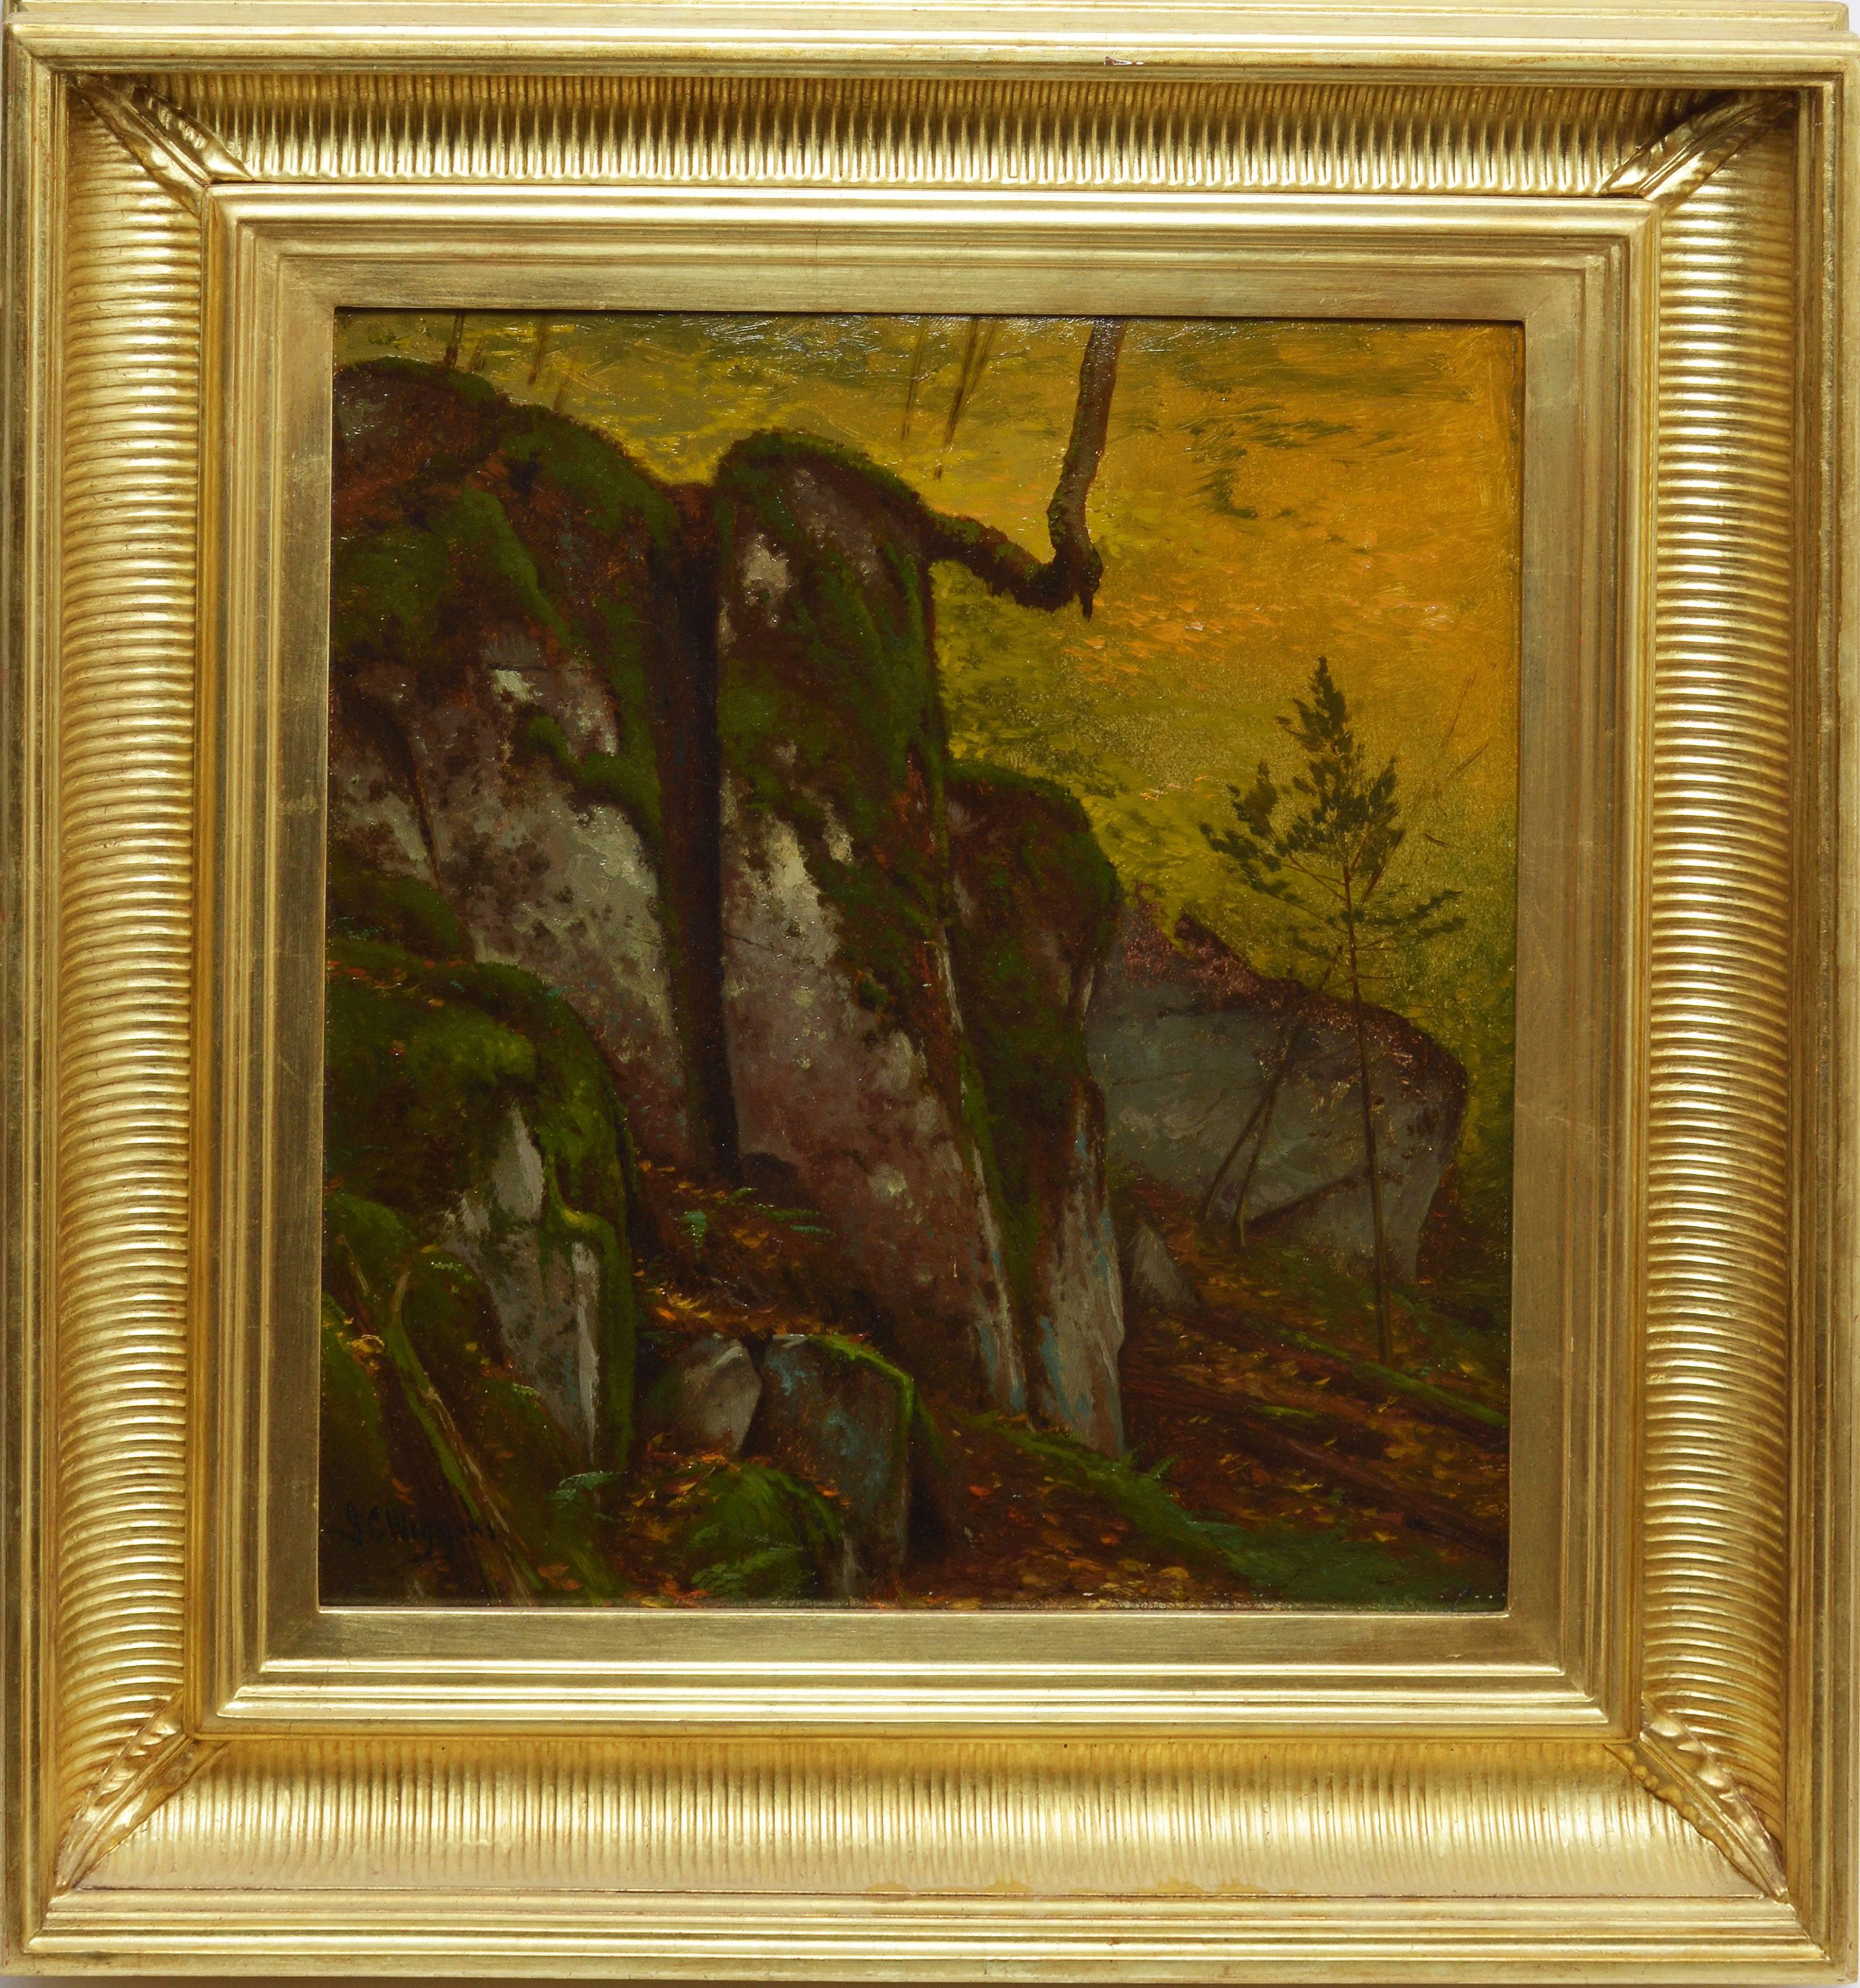 John Carleton Wiggins Landscape Painting - Antique American Hudson River School Sunlit Forest Landscape by John C. Wiggins